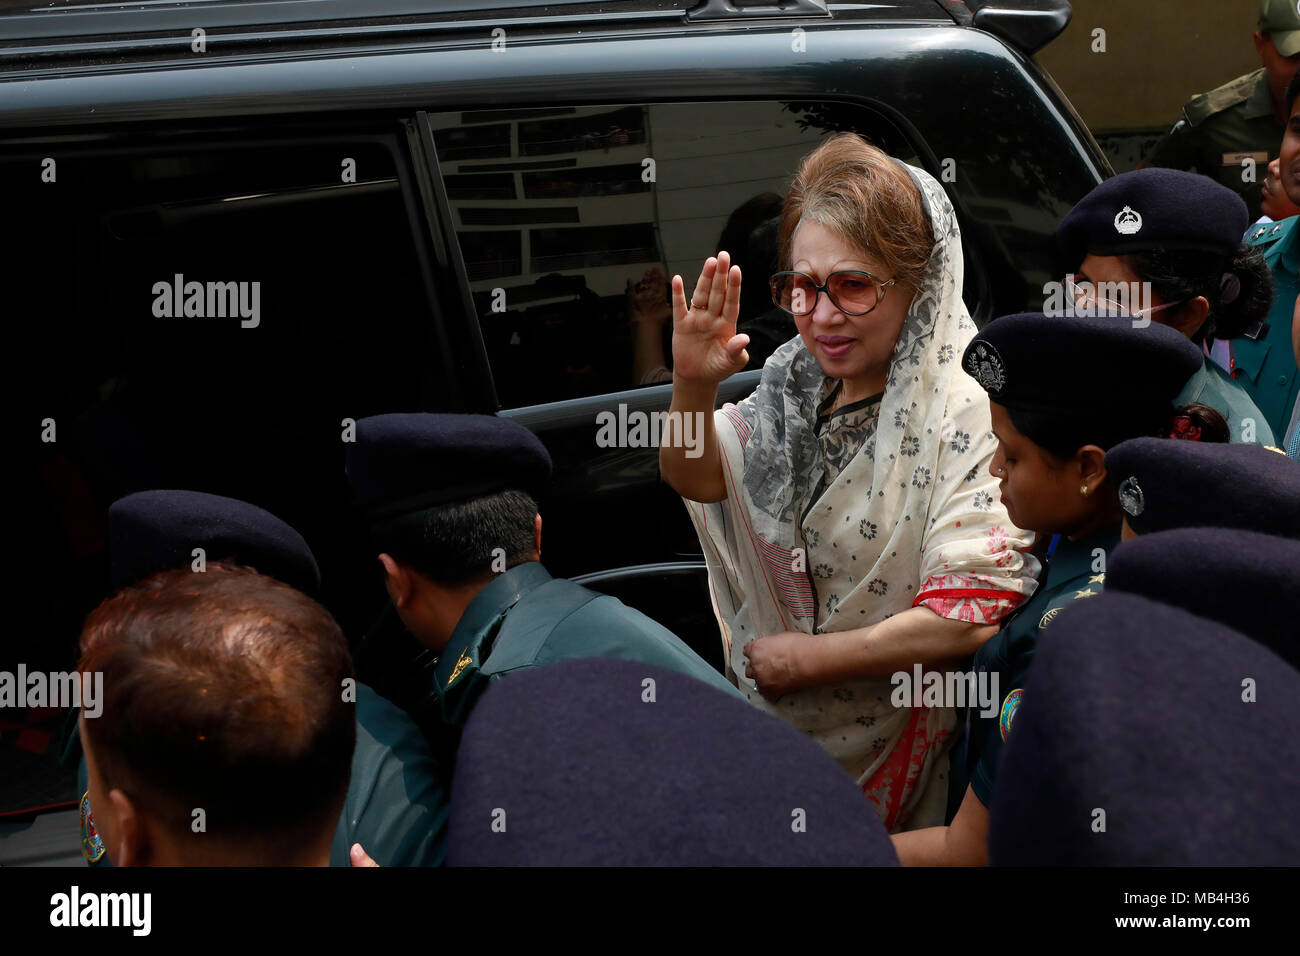 Dhaka, Bangladesch - 07 April 2018: Der ehemalige Premierminister BNP Vorsitzende Khaleda Zia hat das Gefängnis von Old Dhaka Nazimuddin Straße zurück nach einer medizinischen Tests an Bangabandhu Sheikh Mujib Medizinische Universität (BSMMU)., die bis zu fünf Jahre im Gefängnis in der Zia Waisenhaus Vertrauen graft Fall am Feb 8 verurteilt wurde, ein Gefängnis in ein schwarzes Fahrzeug um 11:15 Uhr hatte am Samstag. Stockfoto